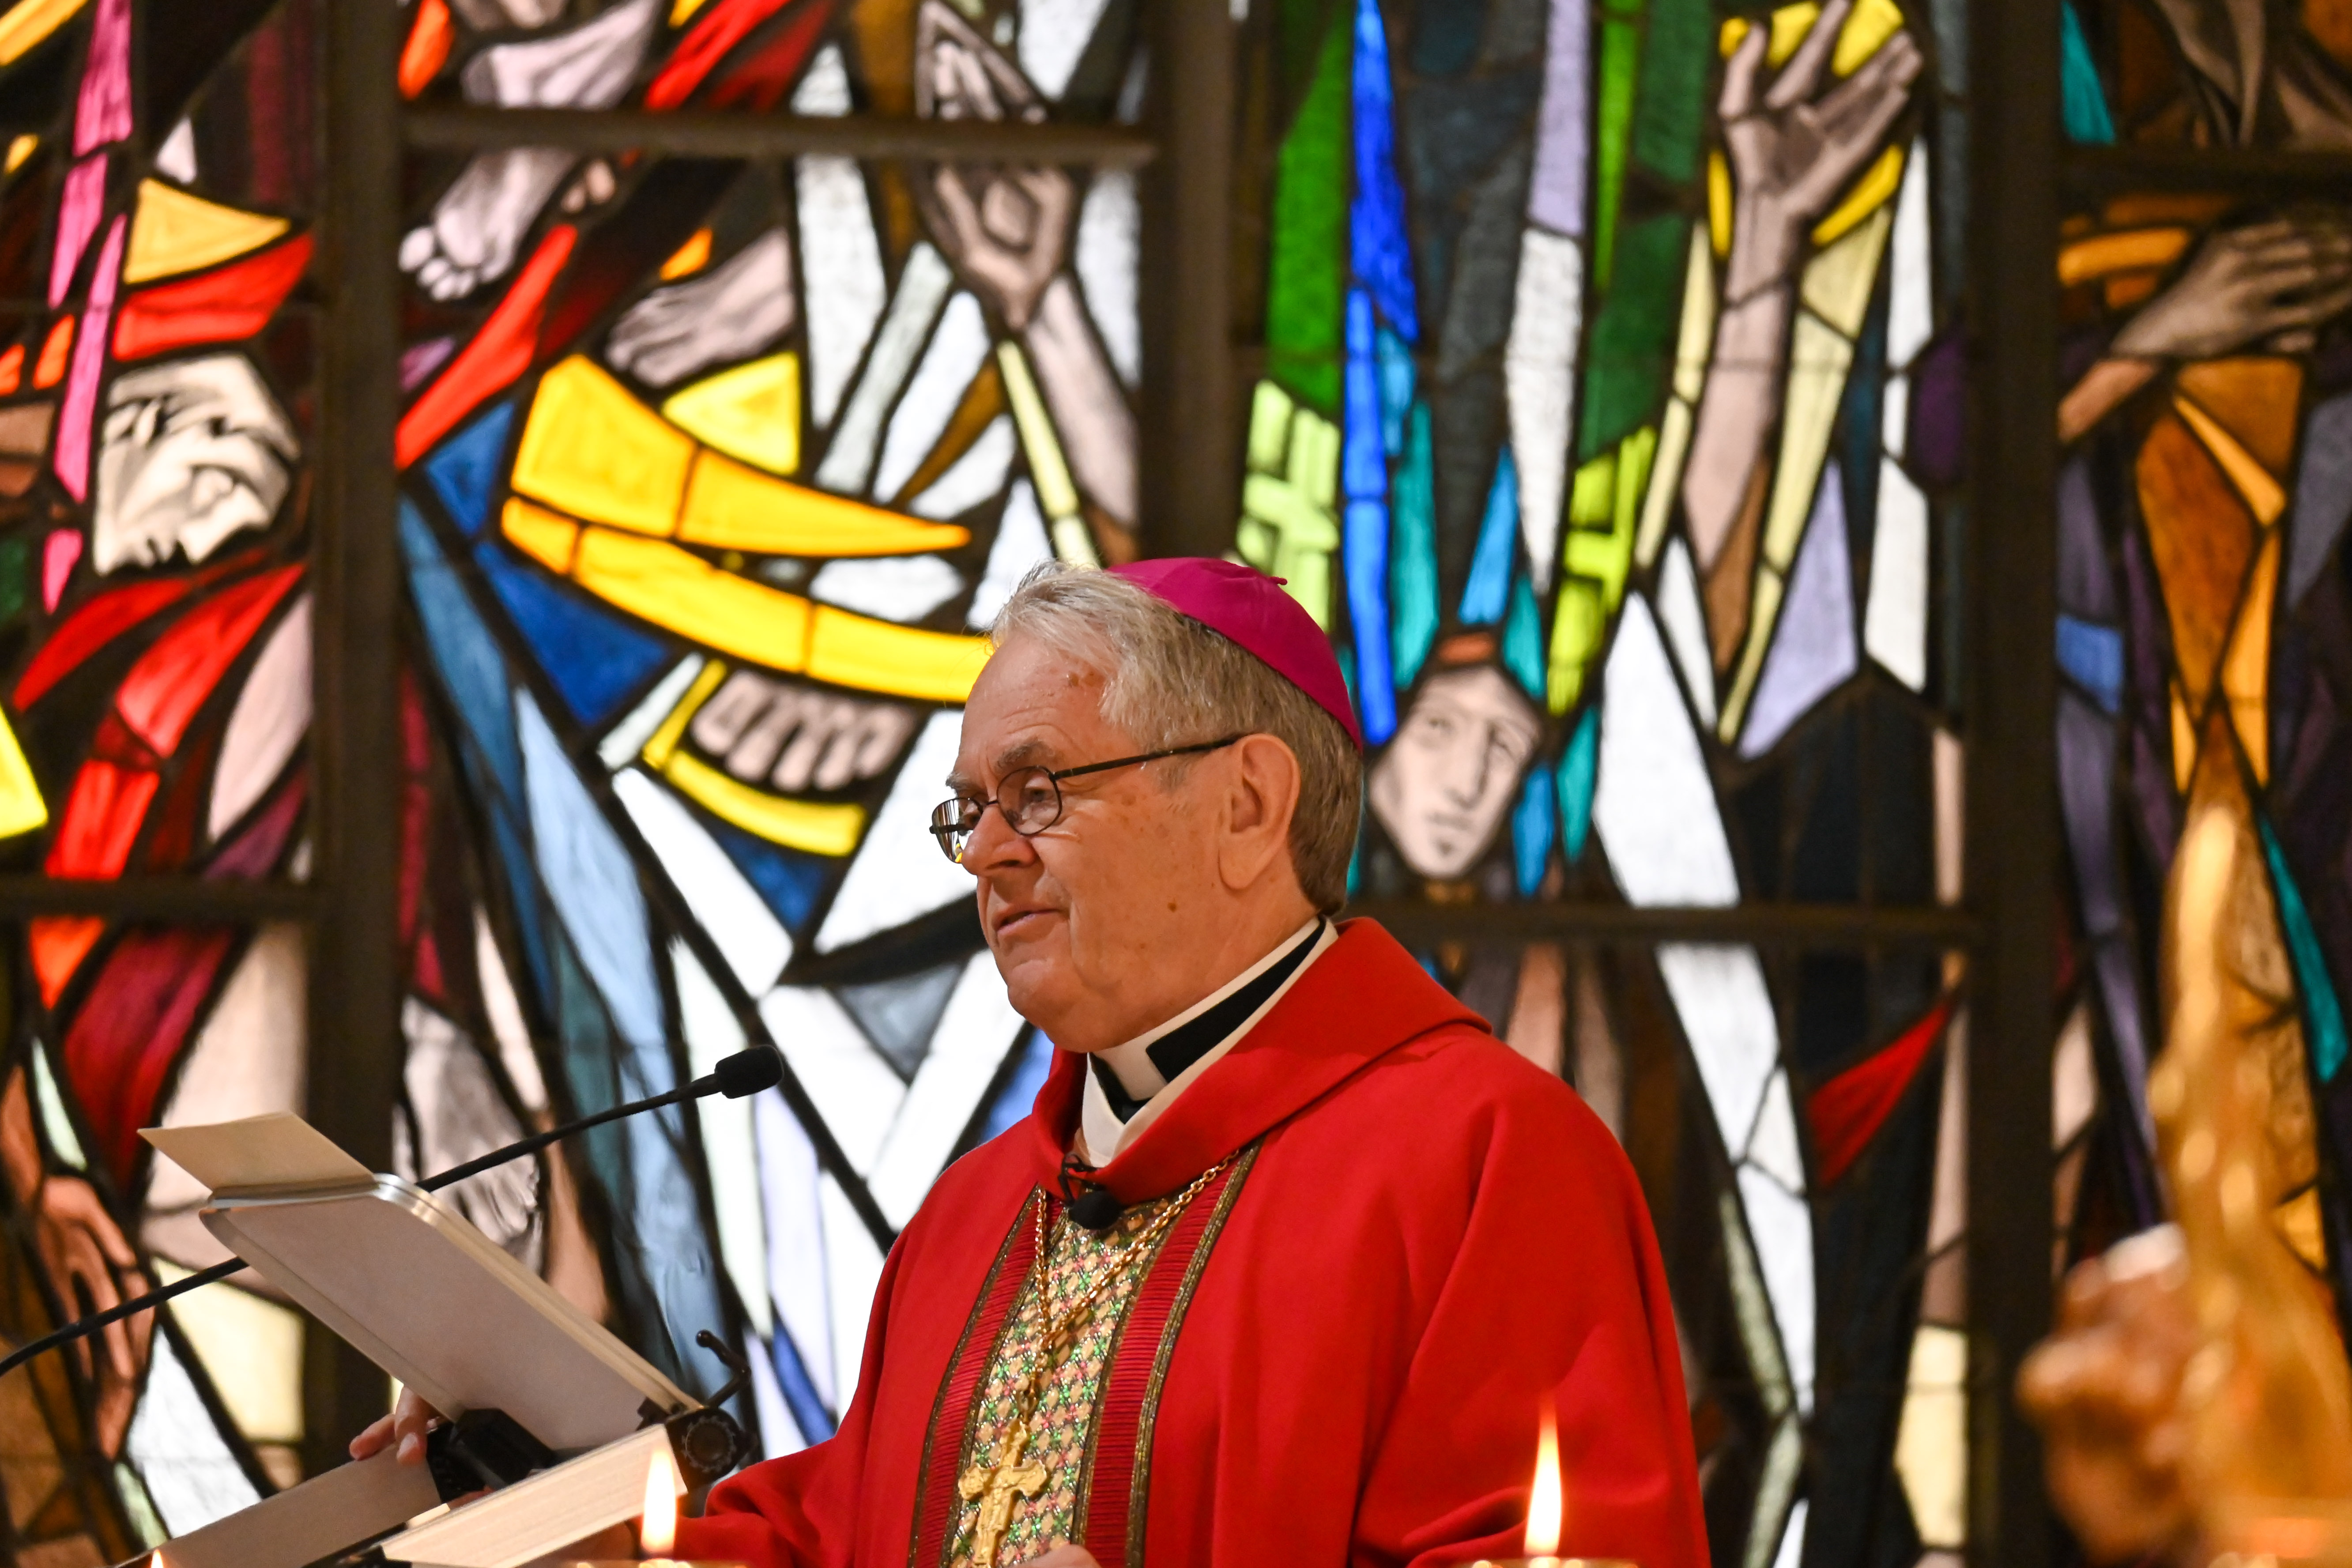 Archbishop George Thomas of Las Vegas saying mass